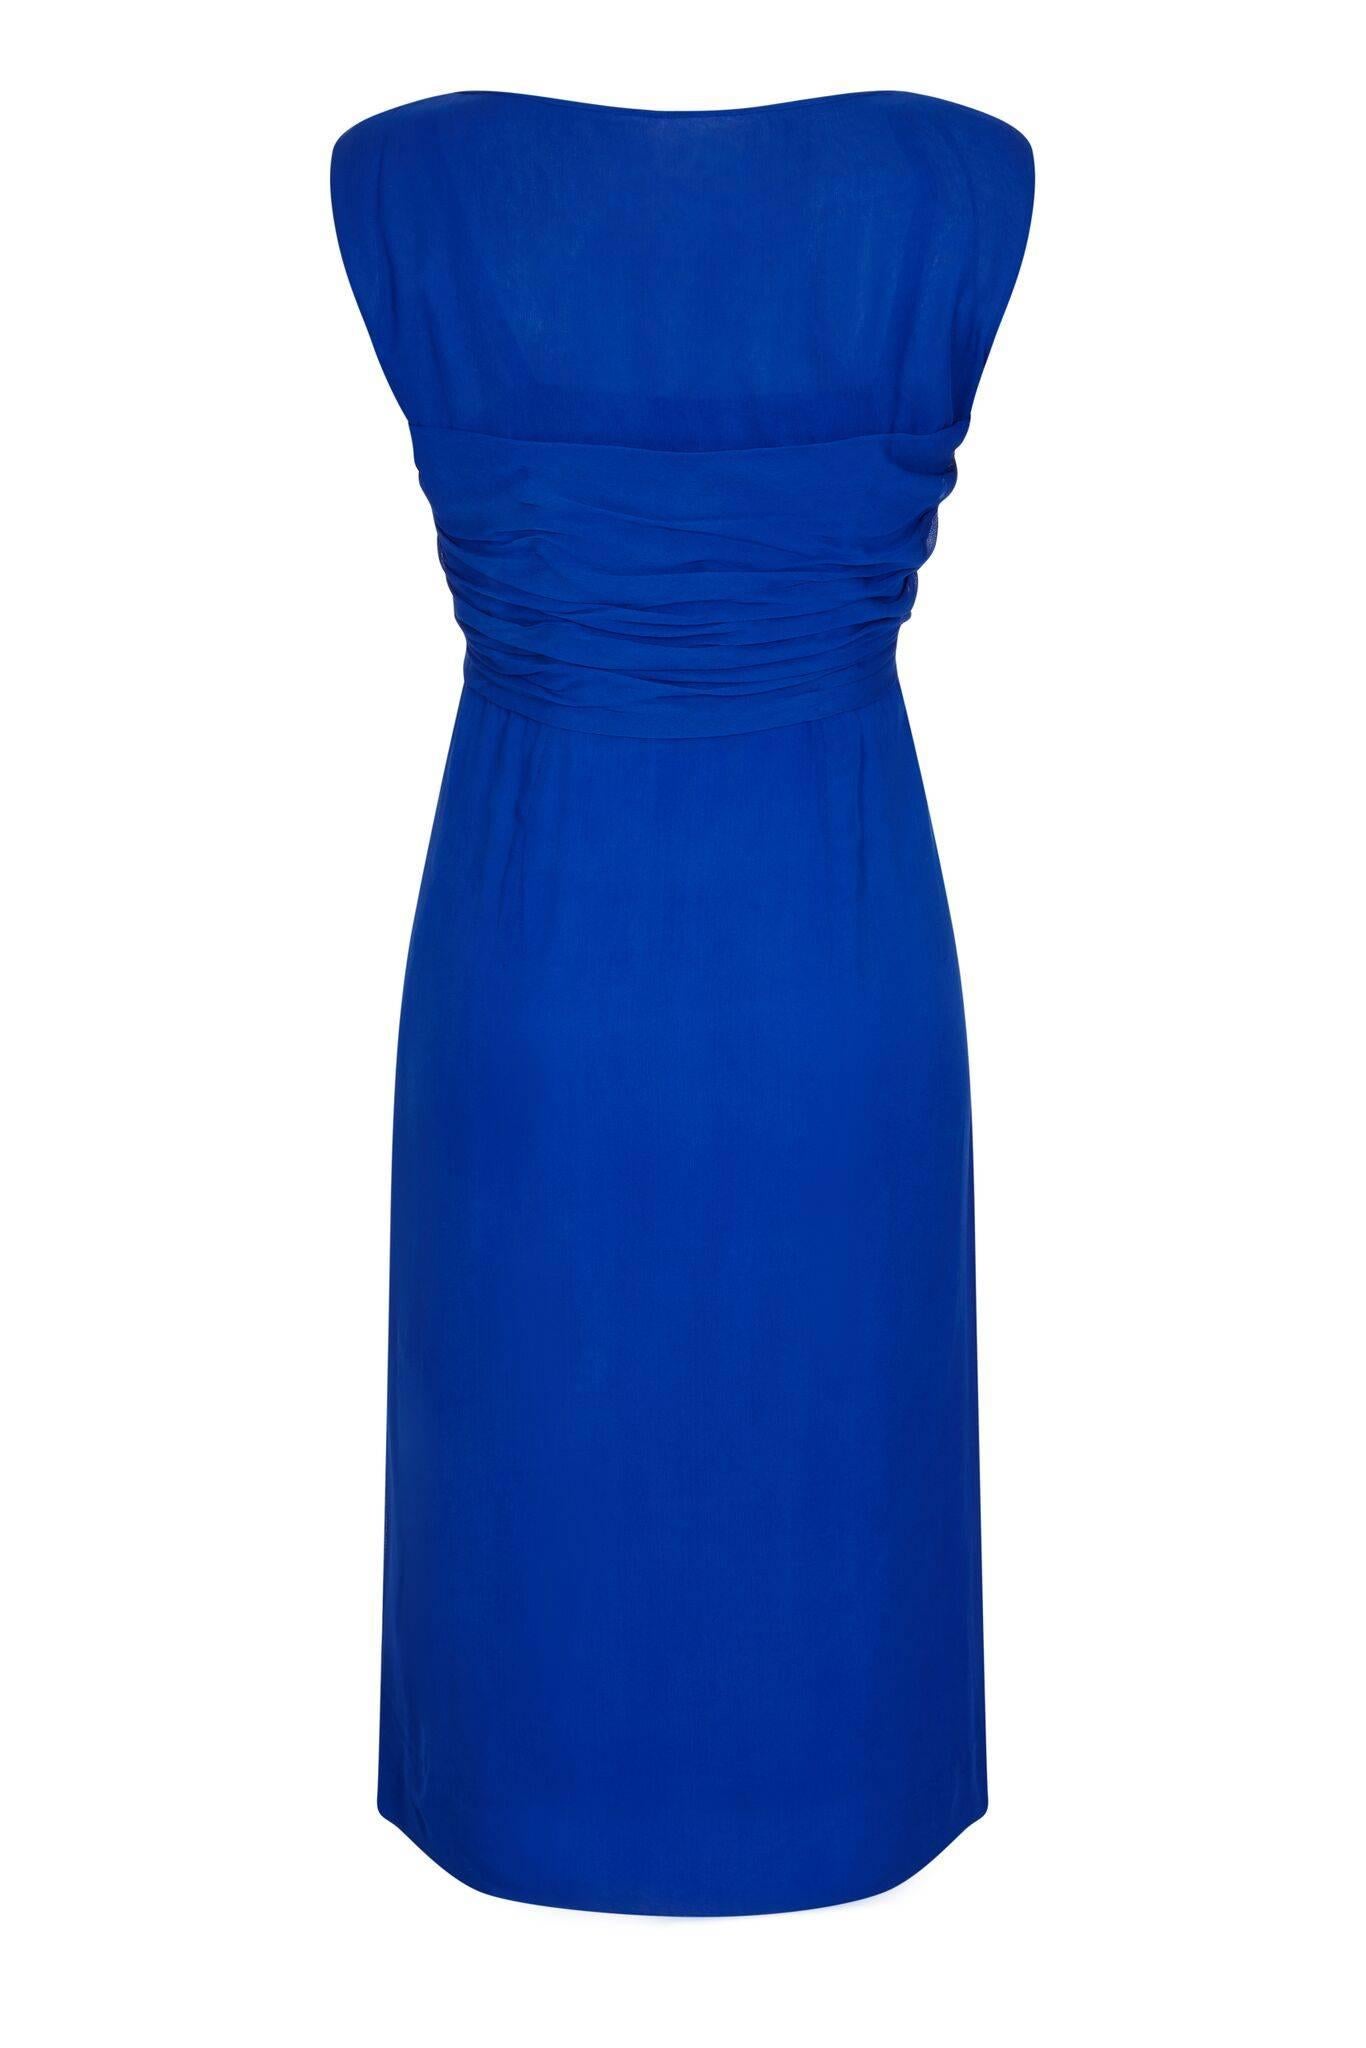 Dieses bezaubernde Abendkleid aus kobaltblauem Seidenchiffon aus den 1950er Jahren wurde nach Haute-Couture-Standard gefertigt und befindet sich in einem tadellosen Vintage-Zustand. Der Chiffon-Overlay ist exquisit geschneidert, um eine ärmellose